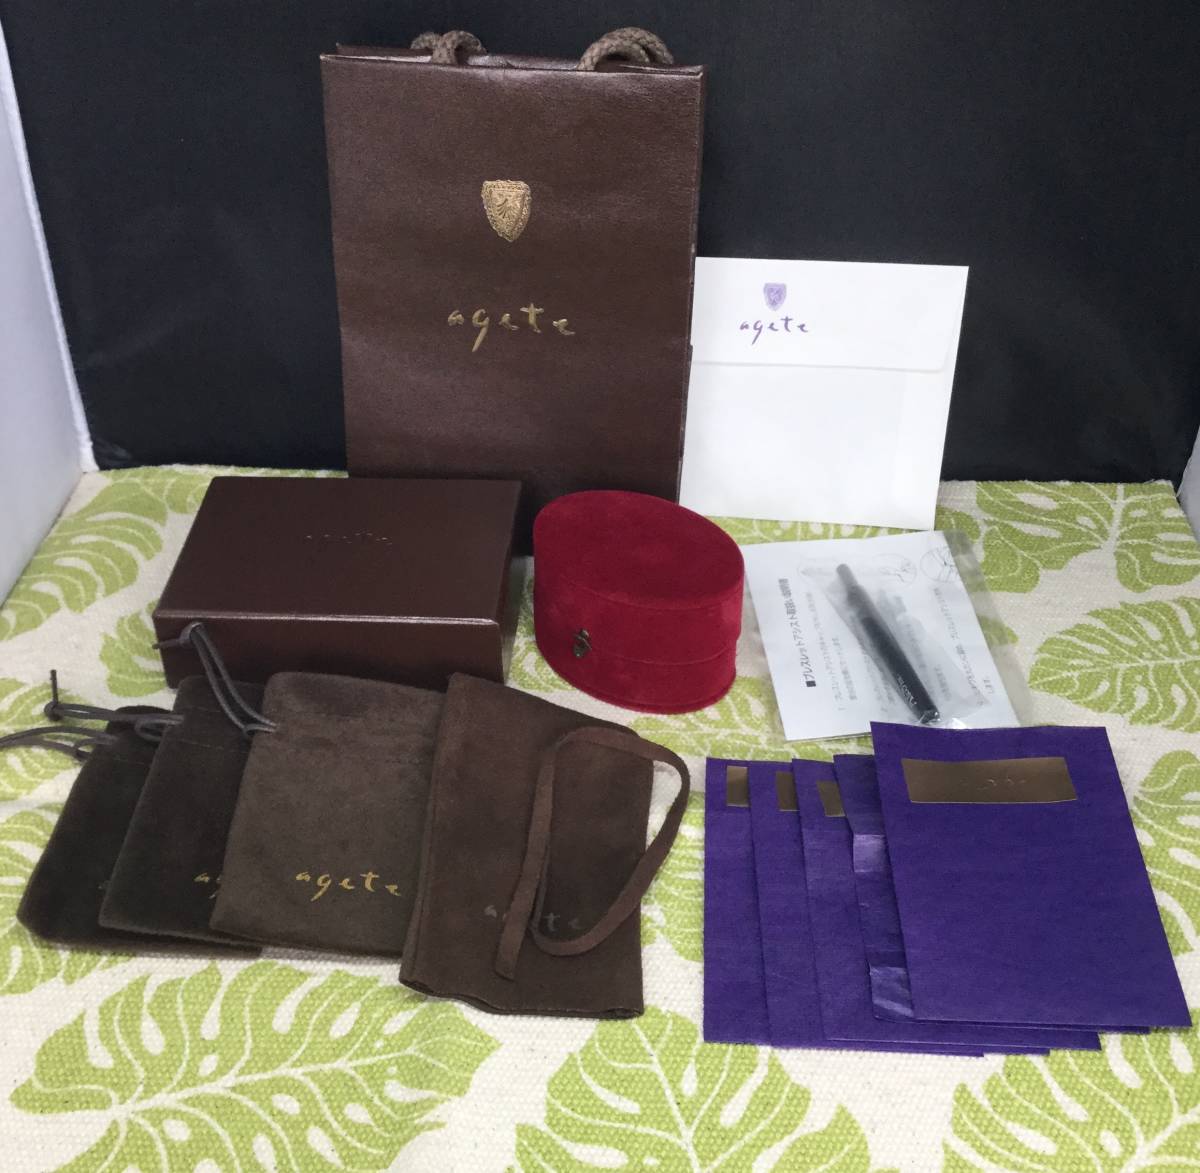 ( 9 ) Agete agete коробка сумка бумажный пакет ювелирные изделия кейс браслет assist фиолетовый защита пакет 